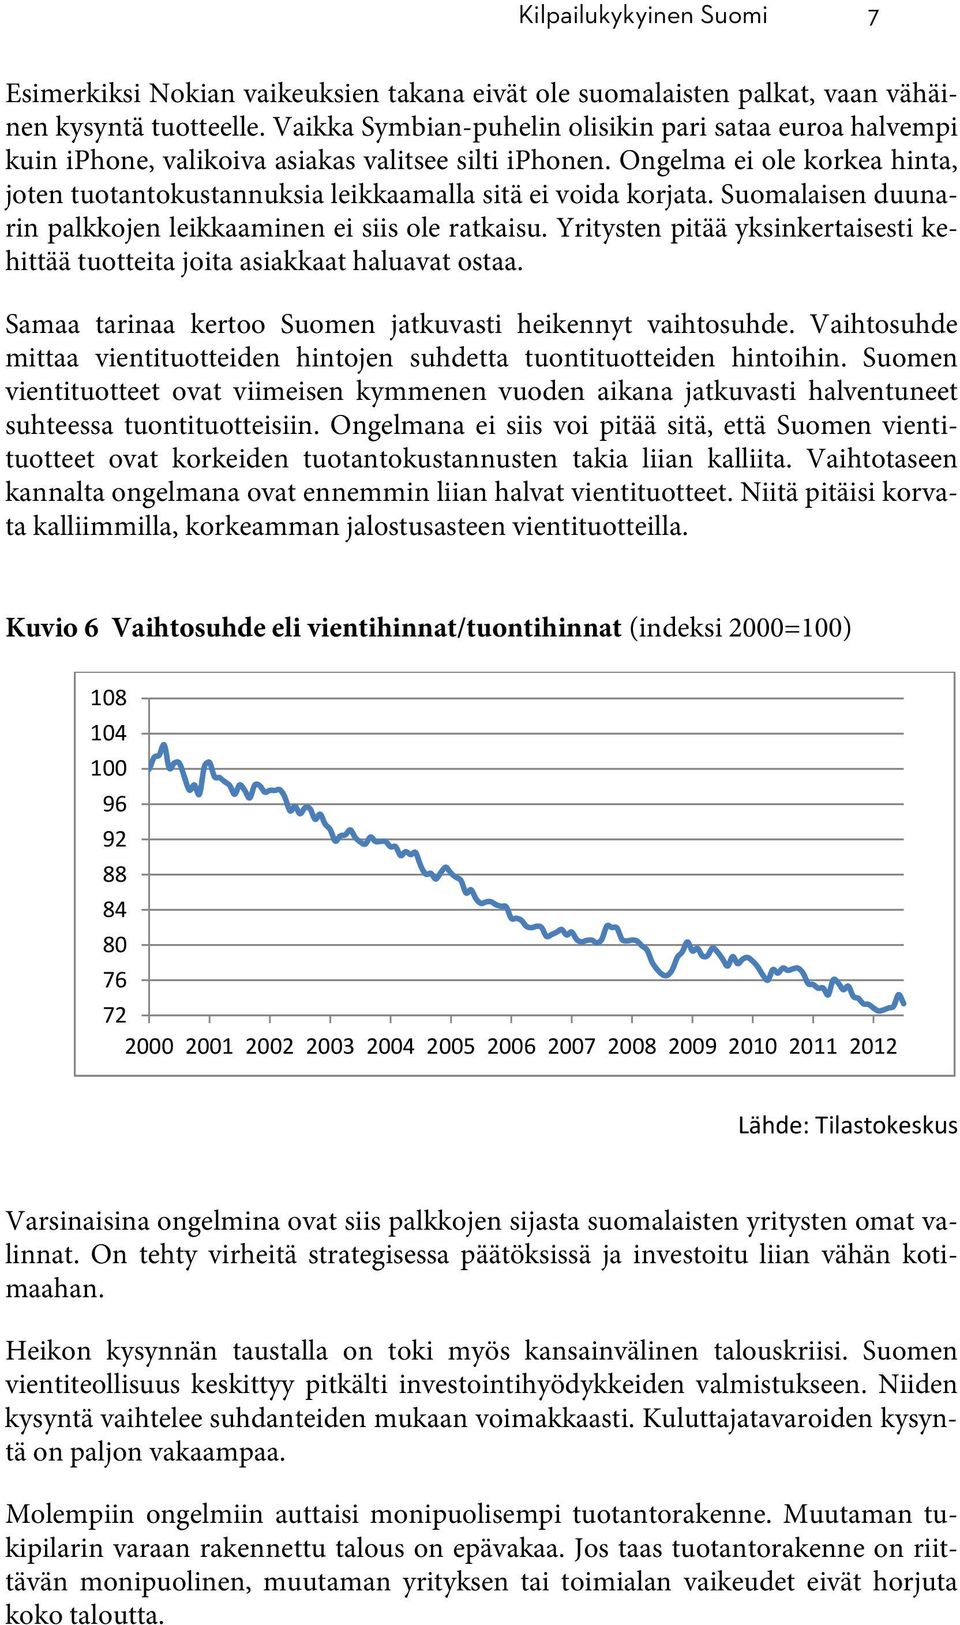 Ongelma ei ole korkea hinta, joten tuotantokustannuksia leikkaamalla sitä ei voida korjata. Suomalaisen duunarin palkkojen leikkaaminen ei siis ole ratkaisu.